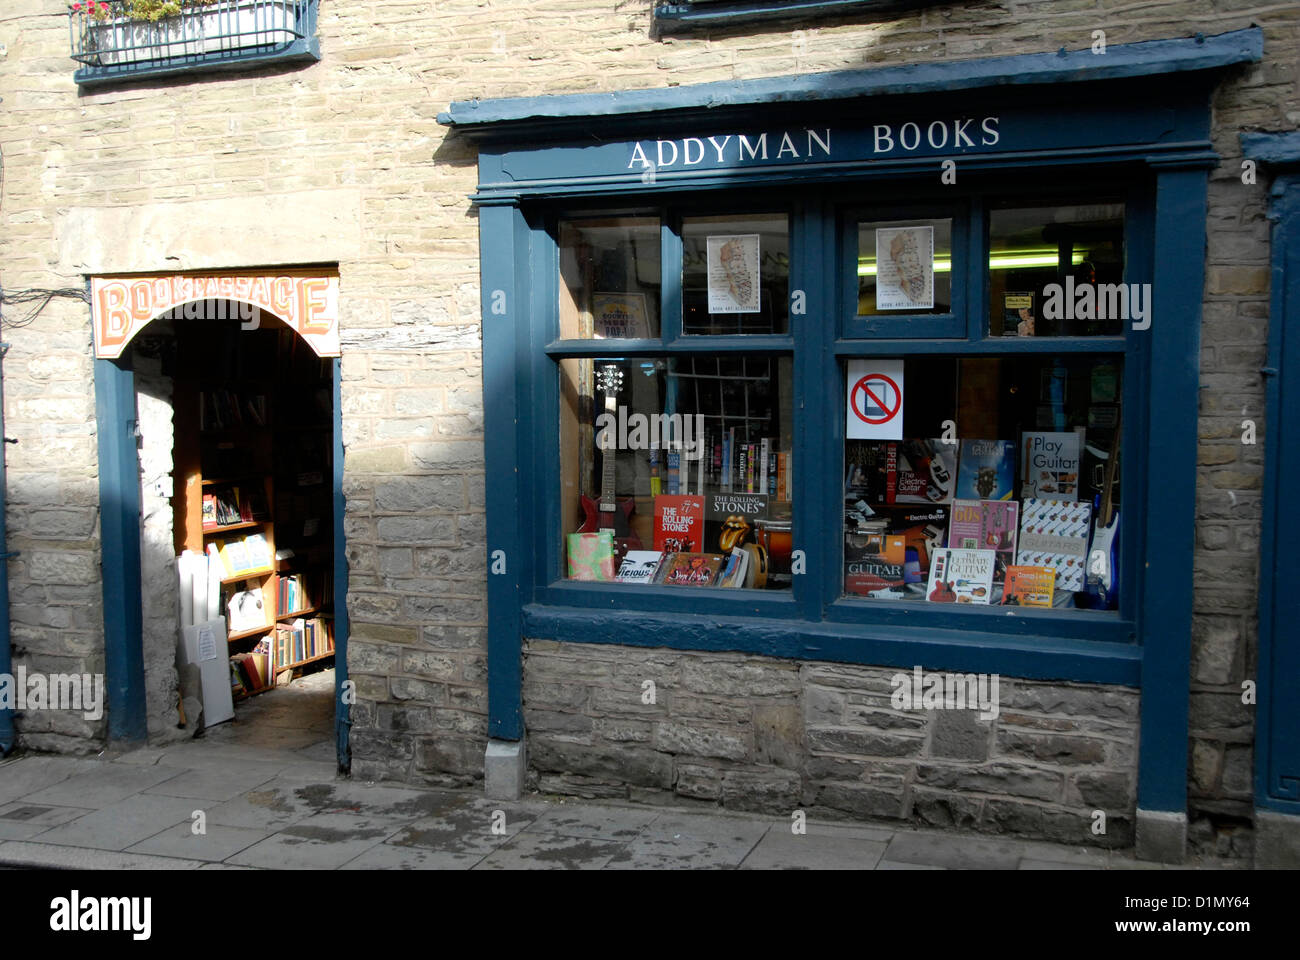 Addyman librairies à Hay-on-Wye gallois sur le côté de la frontière de l'Angleterre - Pays de Galles, Royaume-Uni Banque D'Images